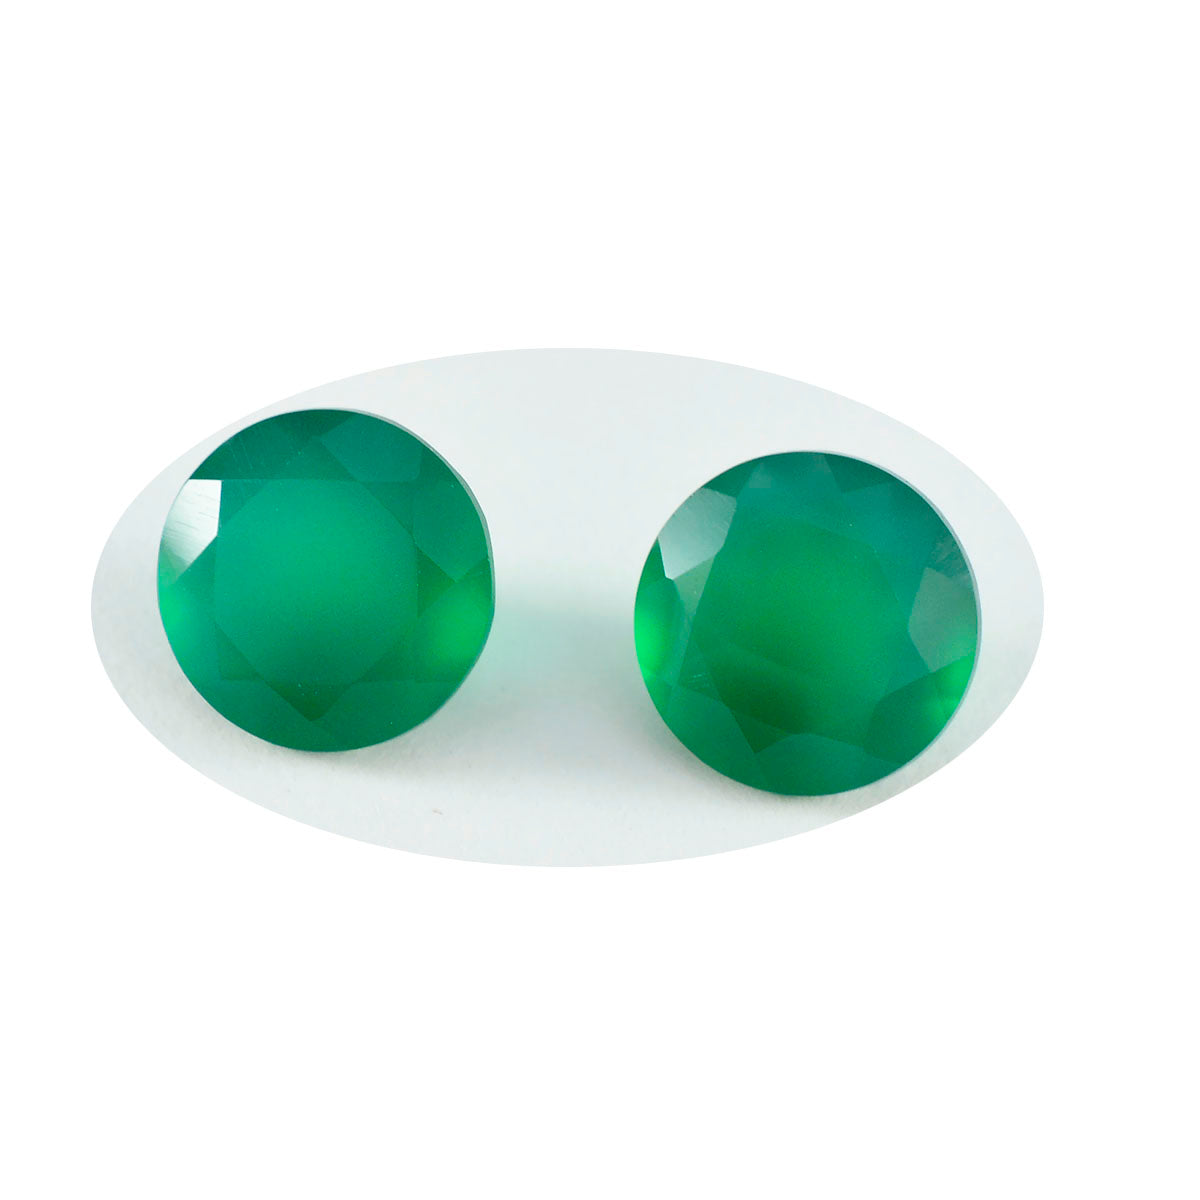 riyogems 1 шт. натуральный зеленый оникс ограненный 7x7 мм круглый камень хорошего качества